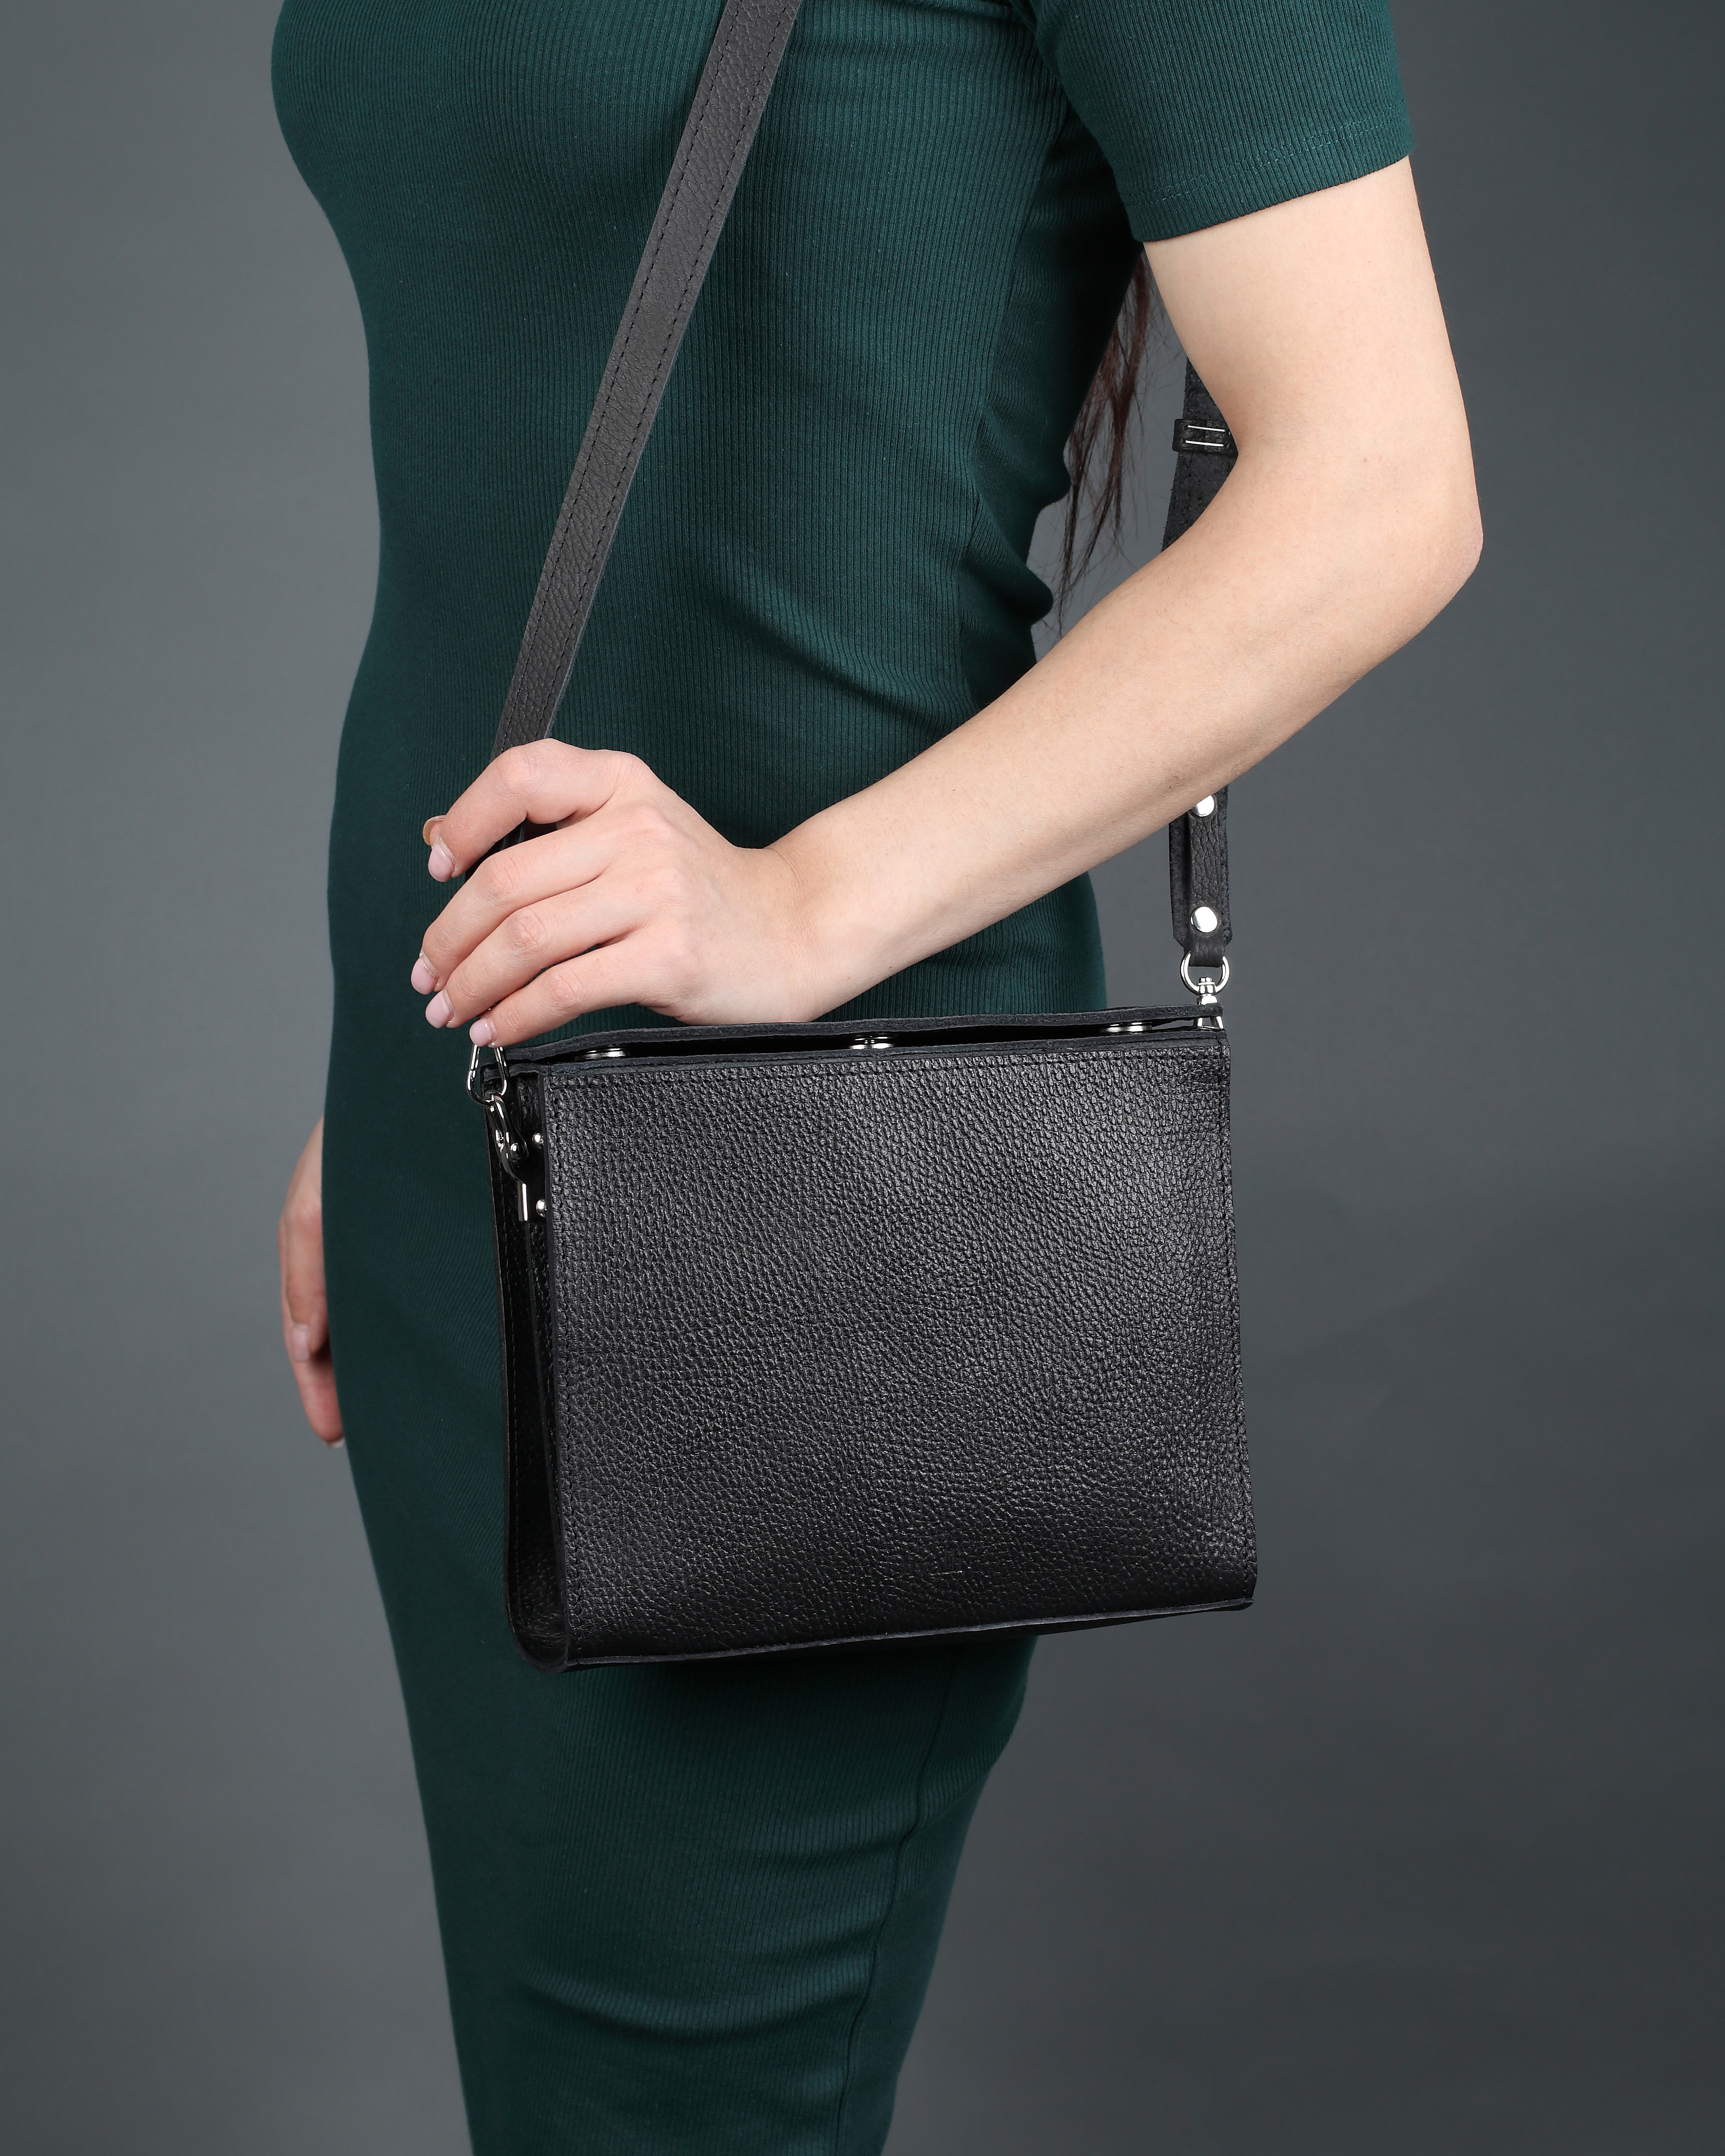 Женская сумка из натуральной кожи черная A013 black grain